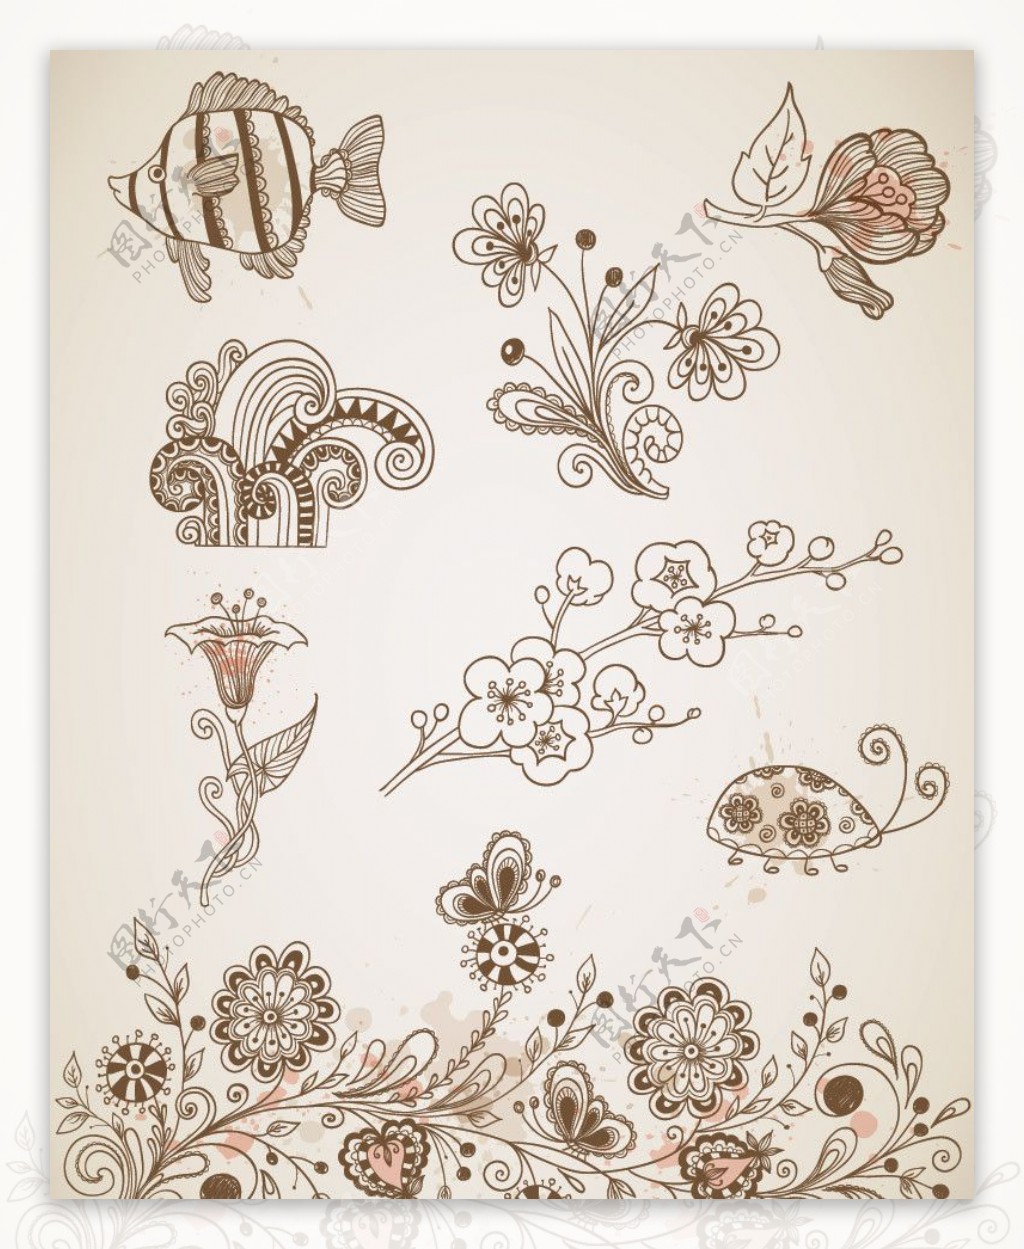 古典花纹花朵装饰设计图片